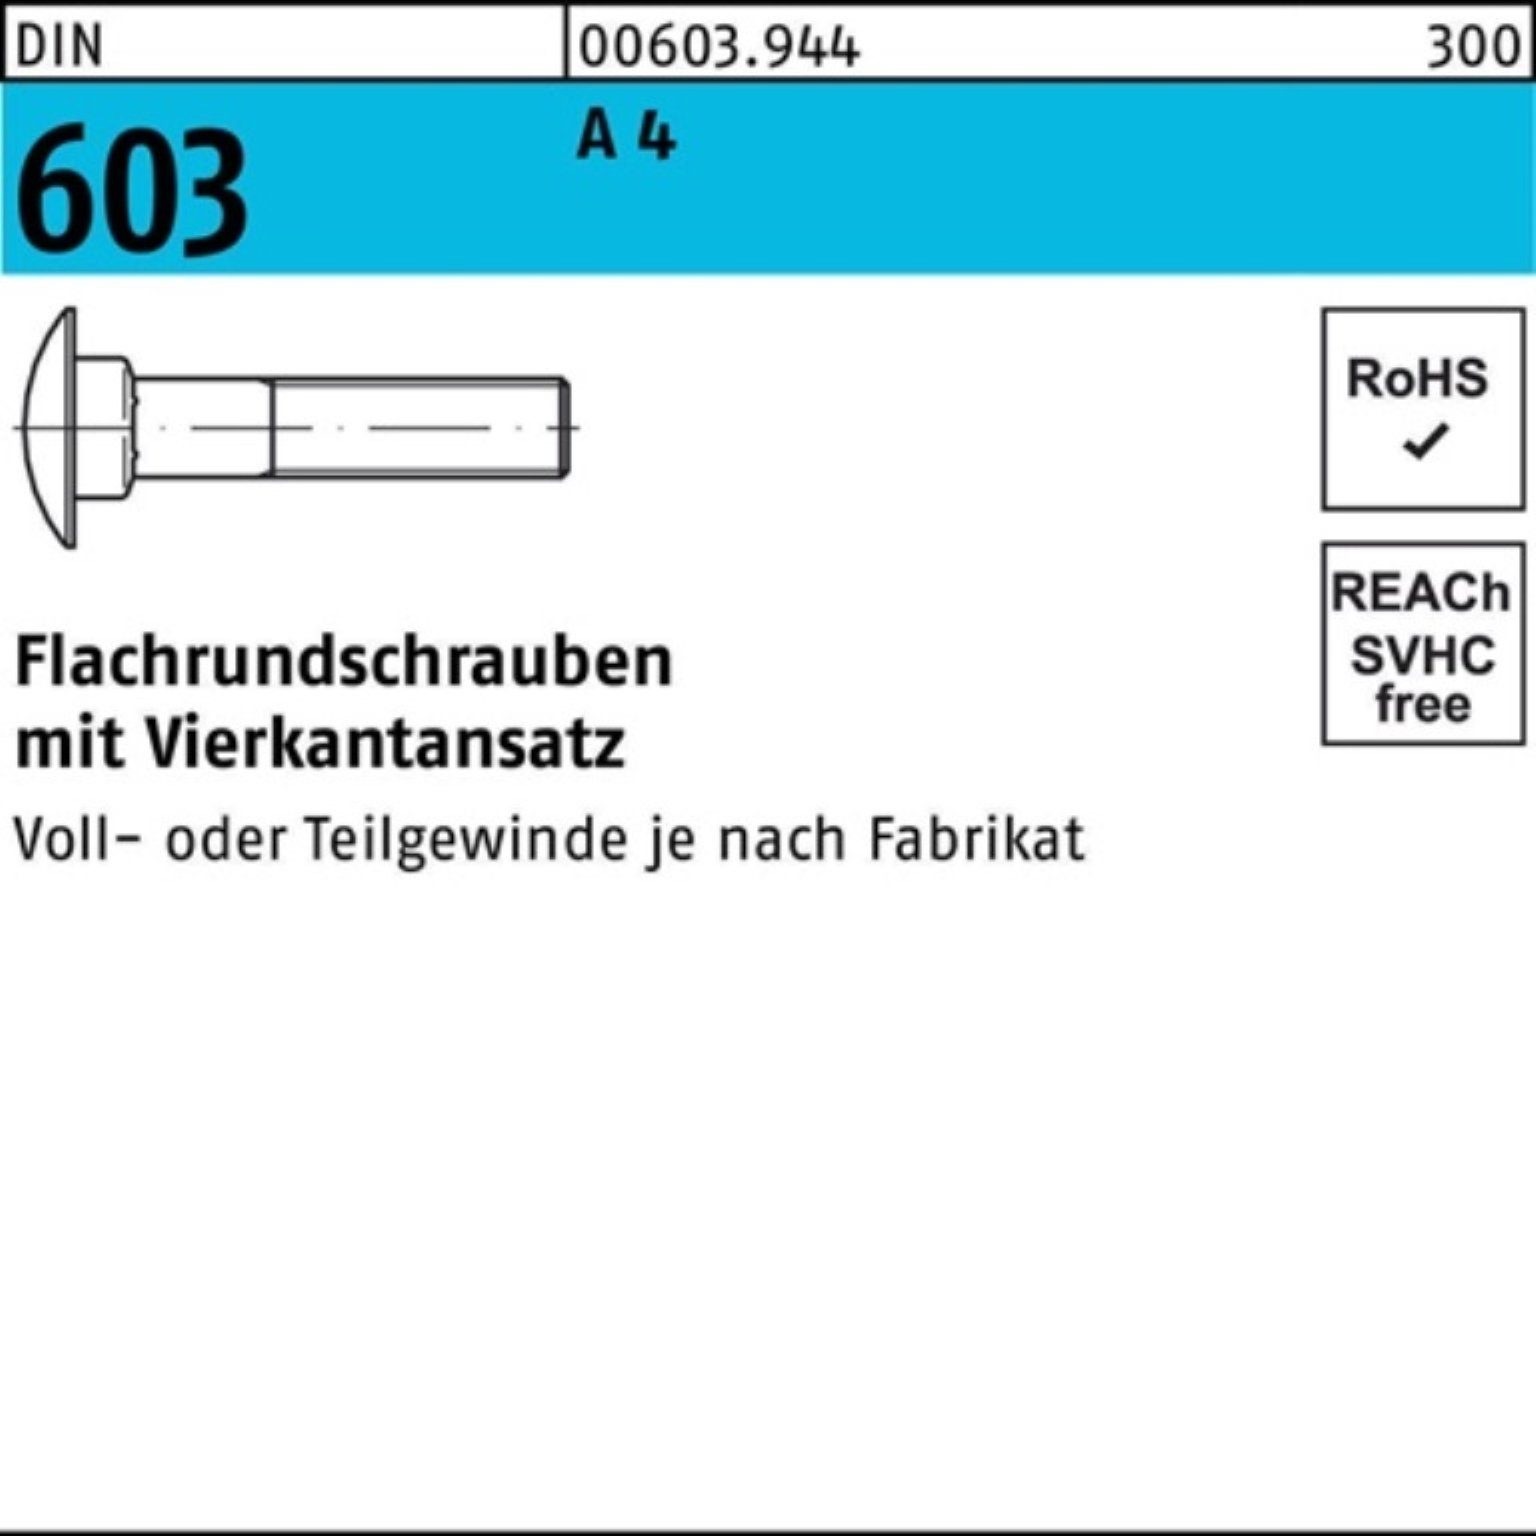 Reyher Schraube 100er Pack Flachrundschraube DIN 603 Vierkantansatz M12x 75 A 4 1 Stü